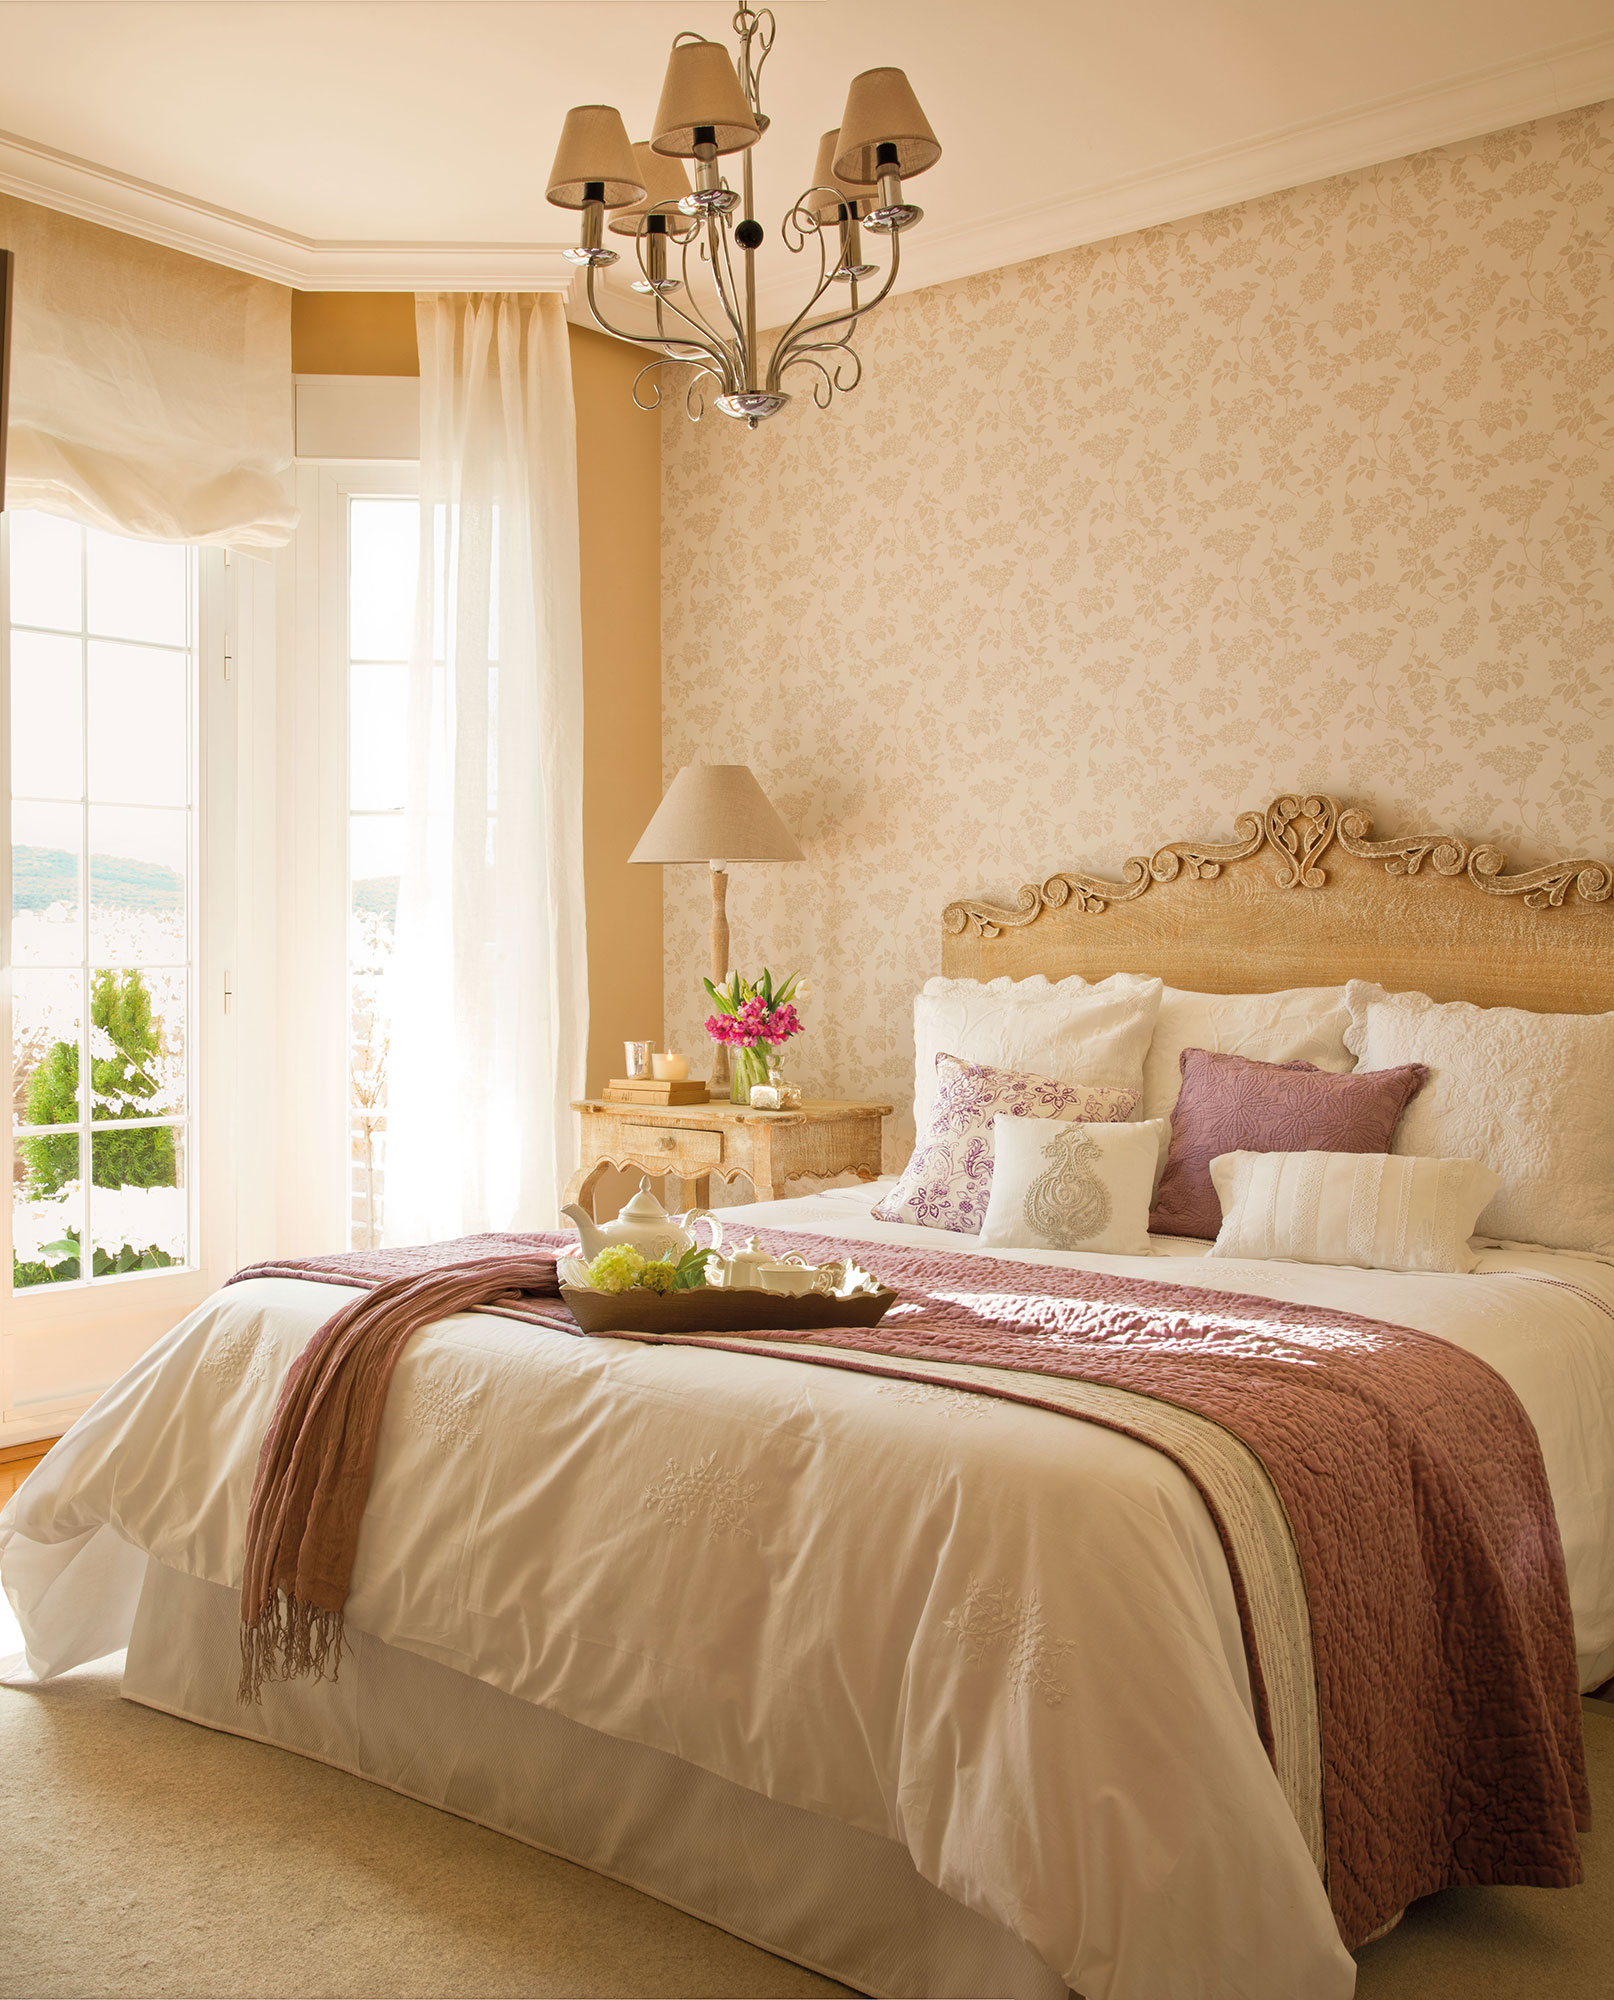 Dormitorio con estilo francés con papel pintado en el cabecero.